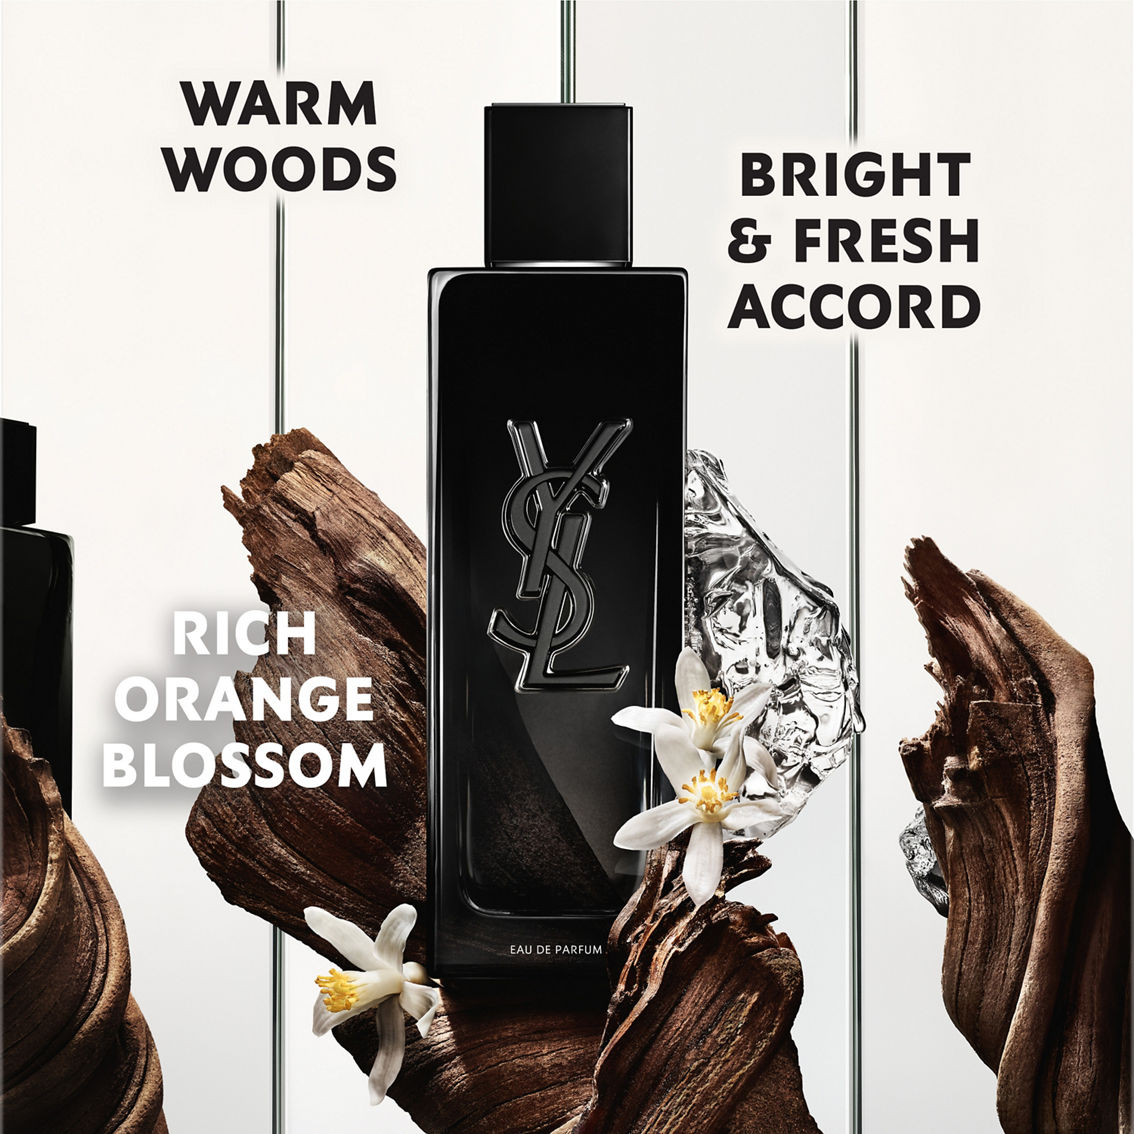 Yves Saint Laurent Men's MYSLF Eau de Parfum - Image 4 of 5